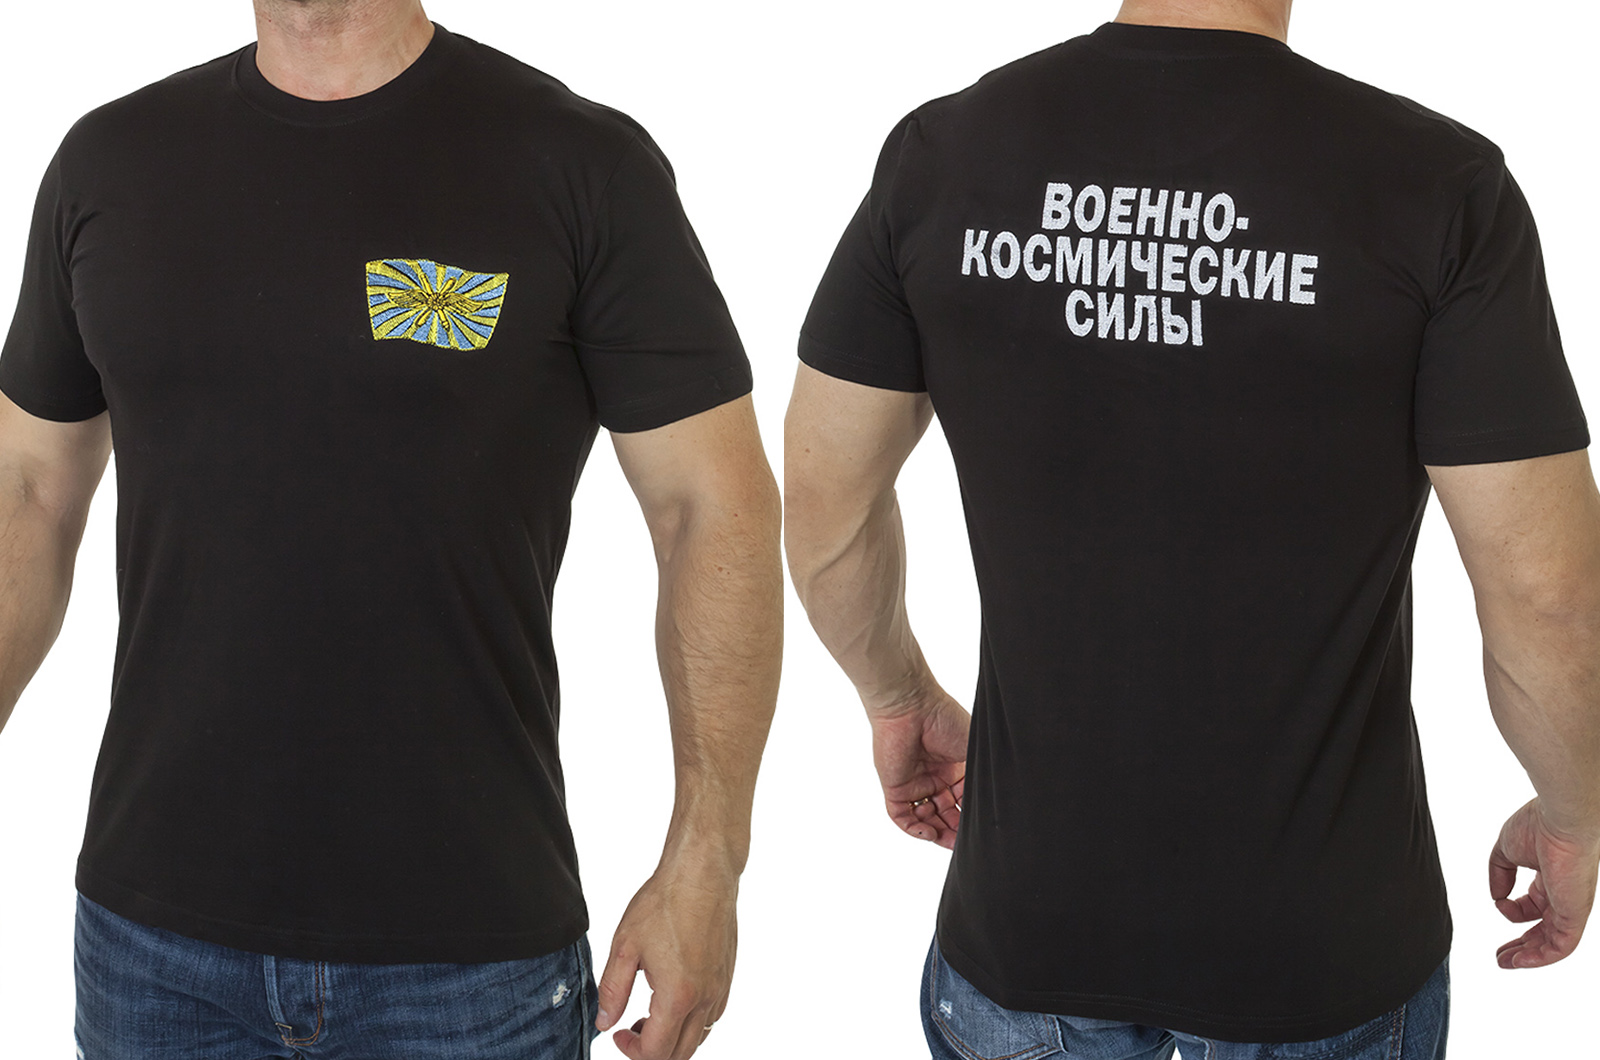 Заказать футболку с вышивкой "Военно-космические силы" с доставкой